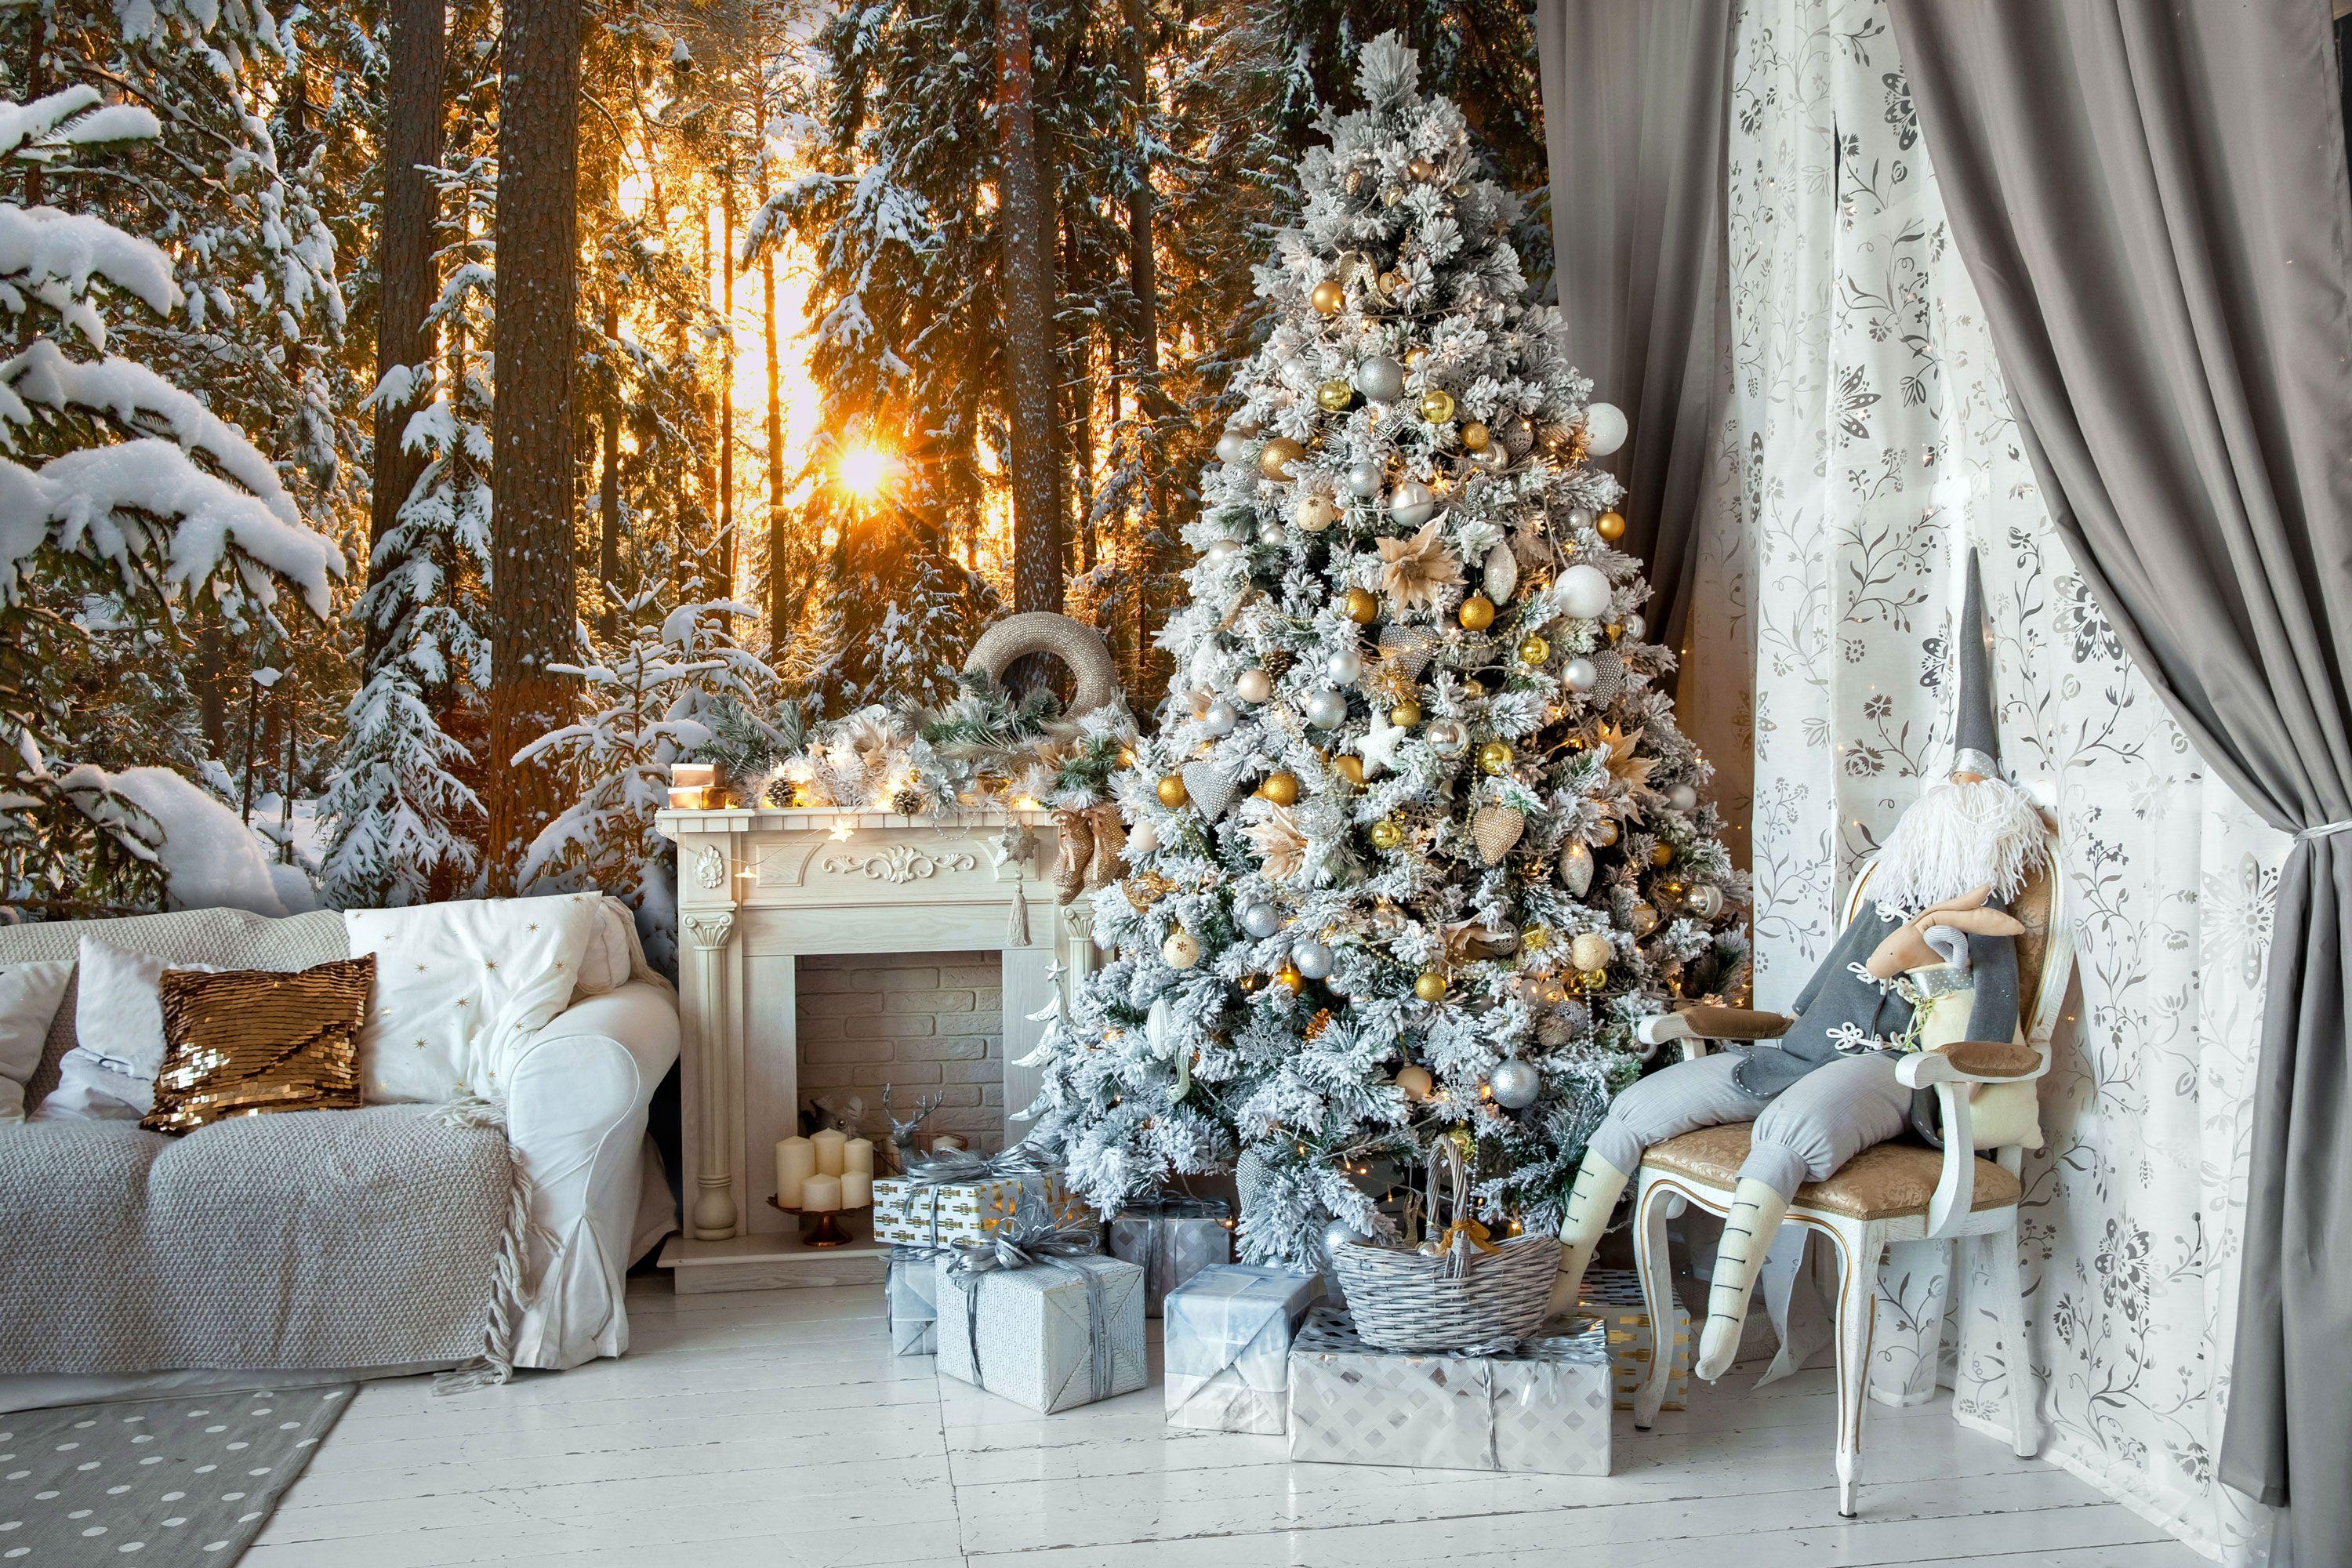 Hình nền phòng khách noel là điểm nhấn hoàn hảo cho không gian sinh hoạt của bạn trong dịp Giáng Sinh này. Hãy cùng xem hình ảnh các hình nền phòng khách noel để tìm được sự lựa chọn phù hợp cho không gian của bạn.